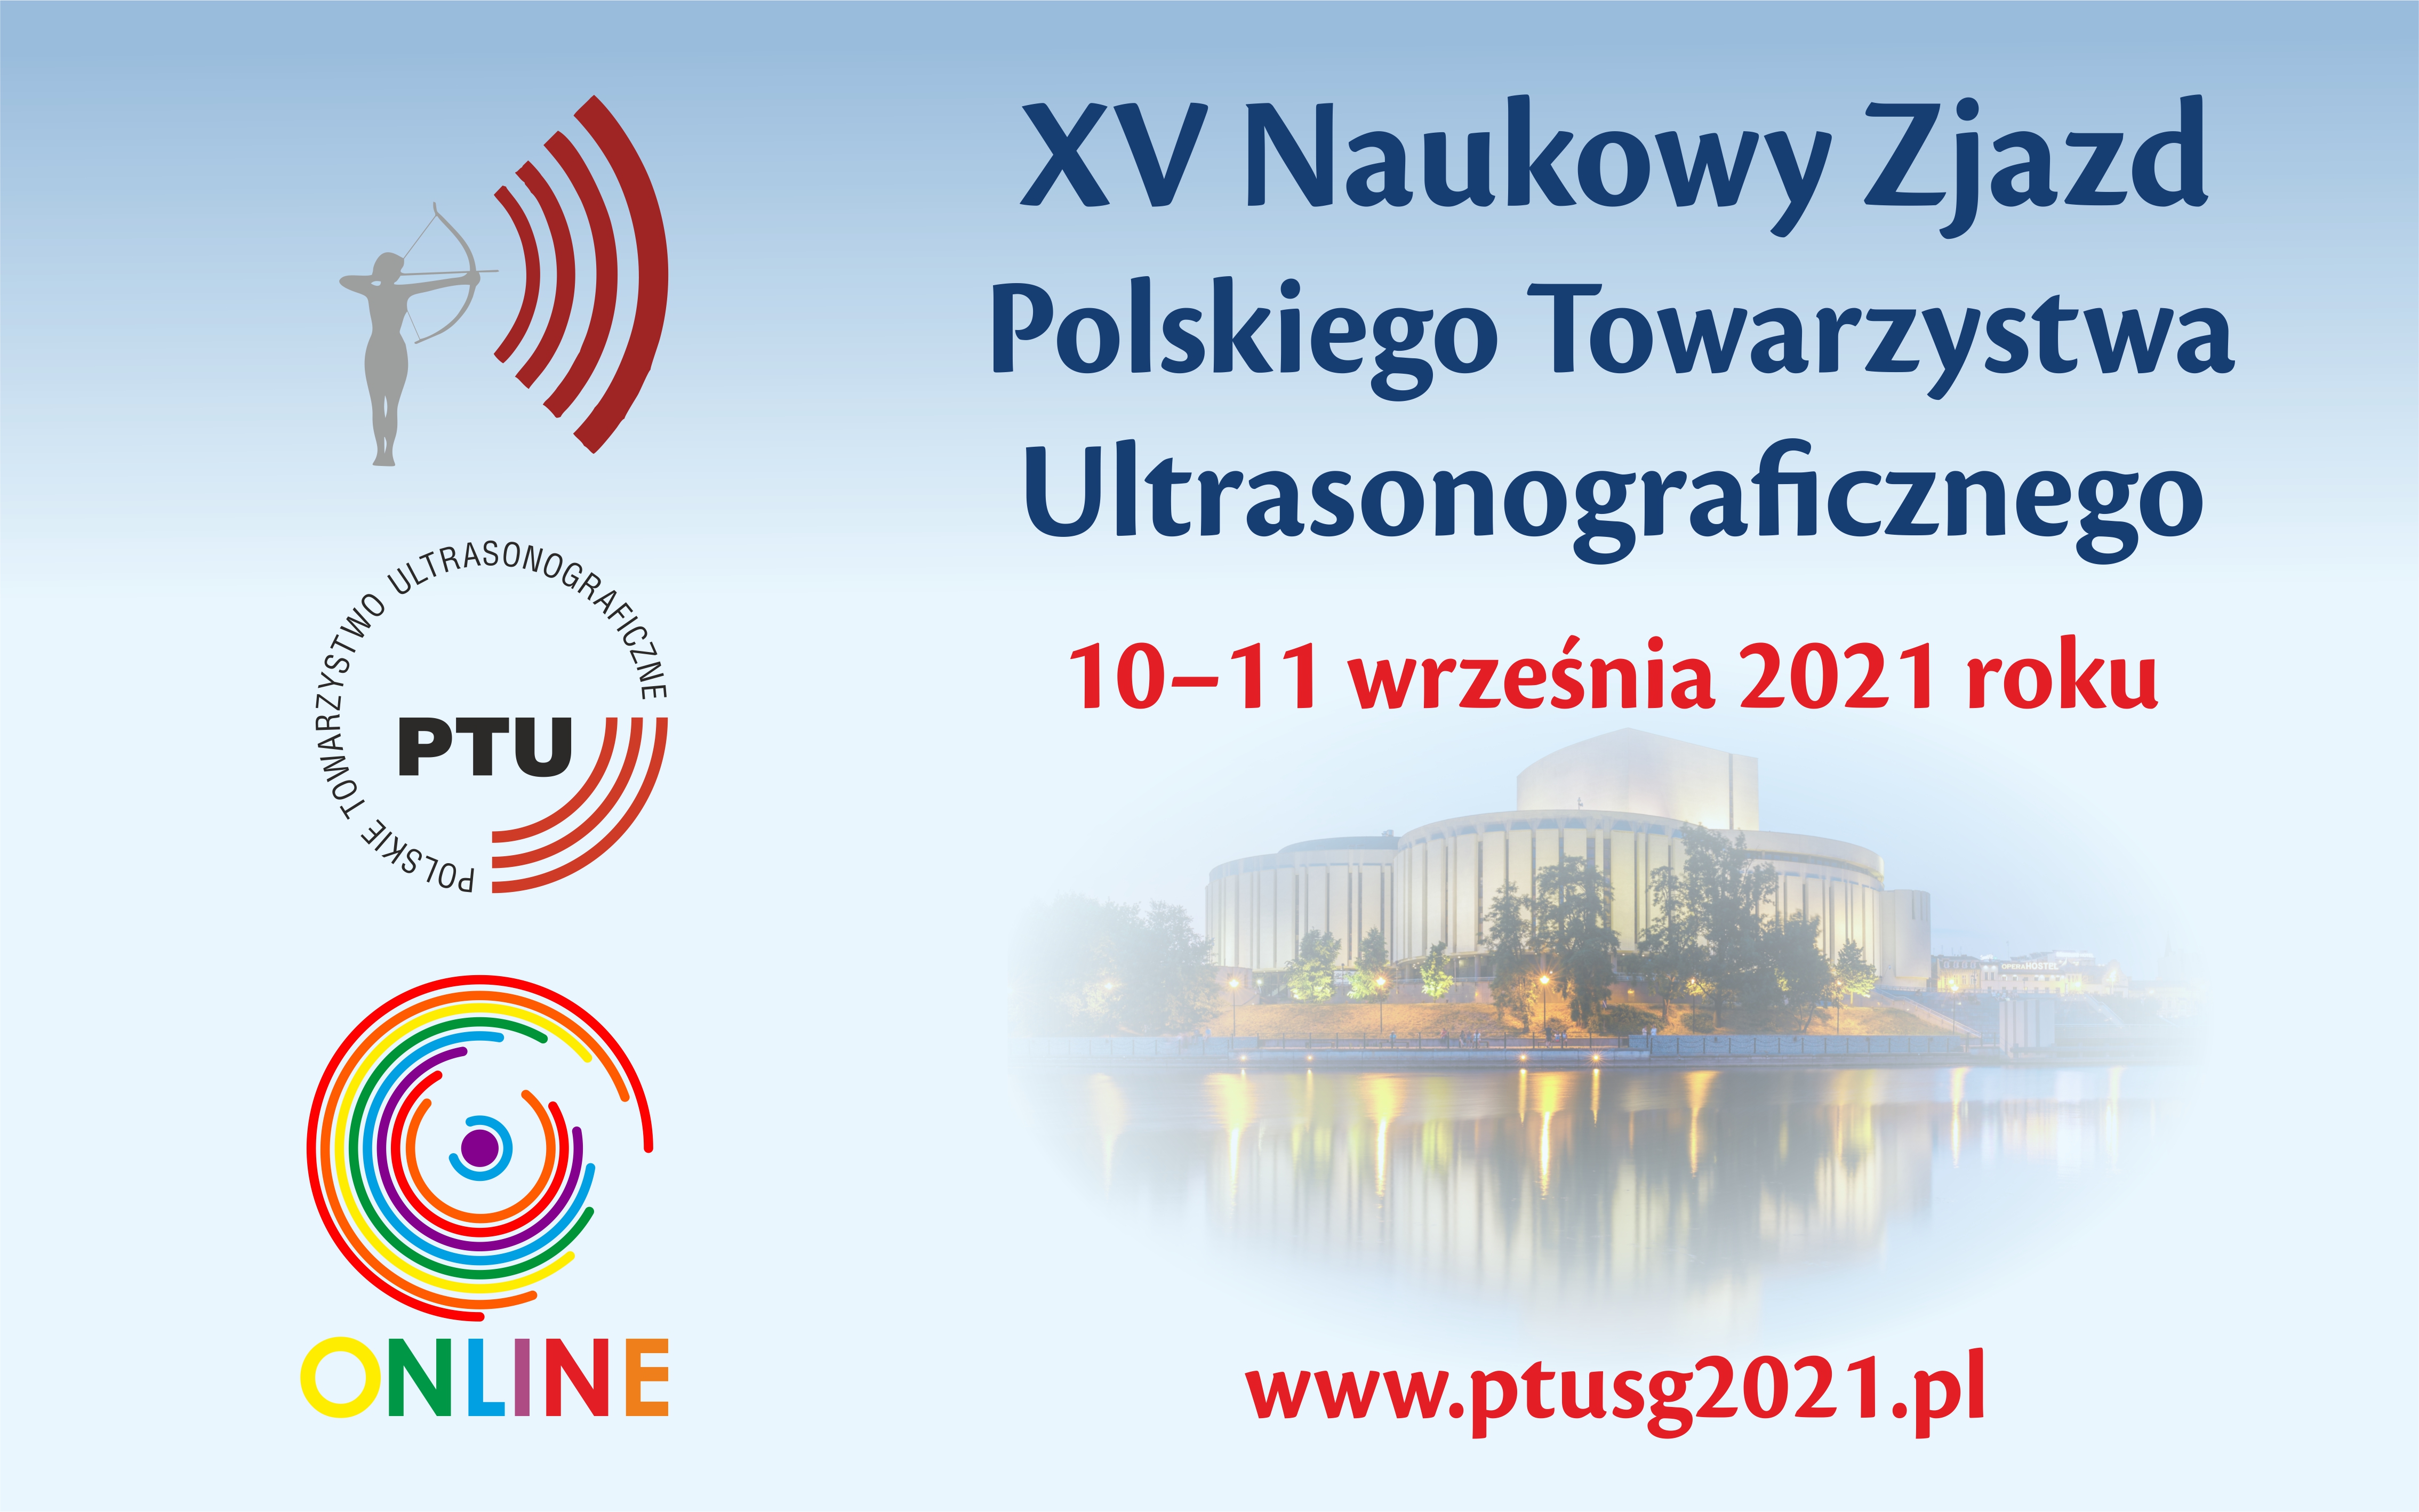  XV Naukowy Zjazd Polskiego Towarzystwa Ultrasonograficznego